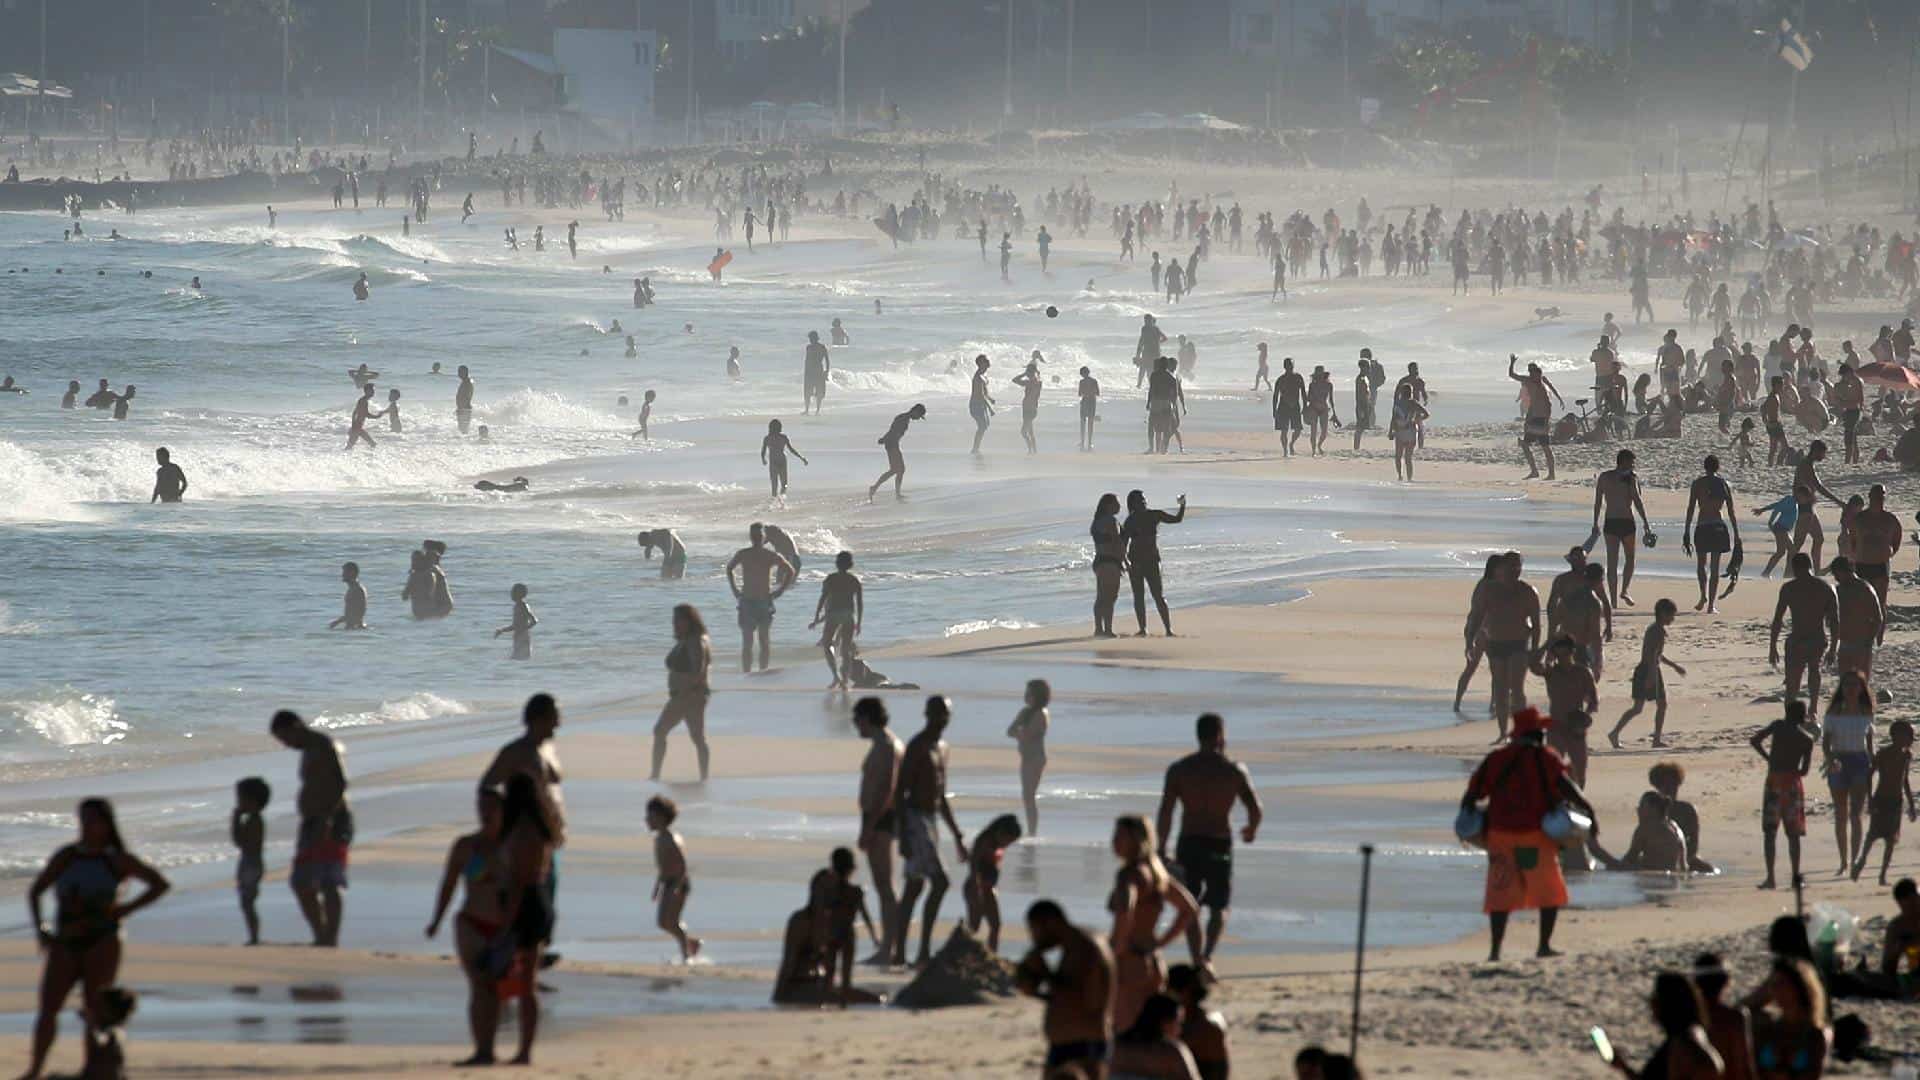 Prefeitura do Rio de Janeiro sugere marcação nas areias para ocupação das praias 